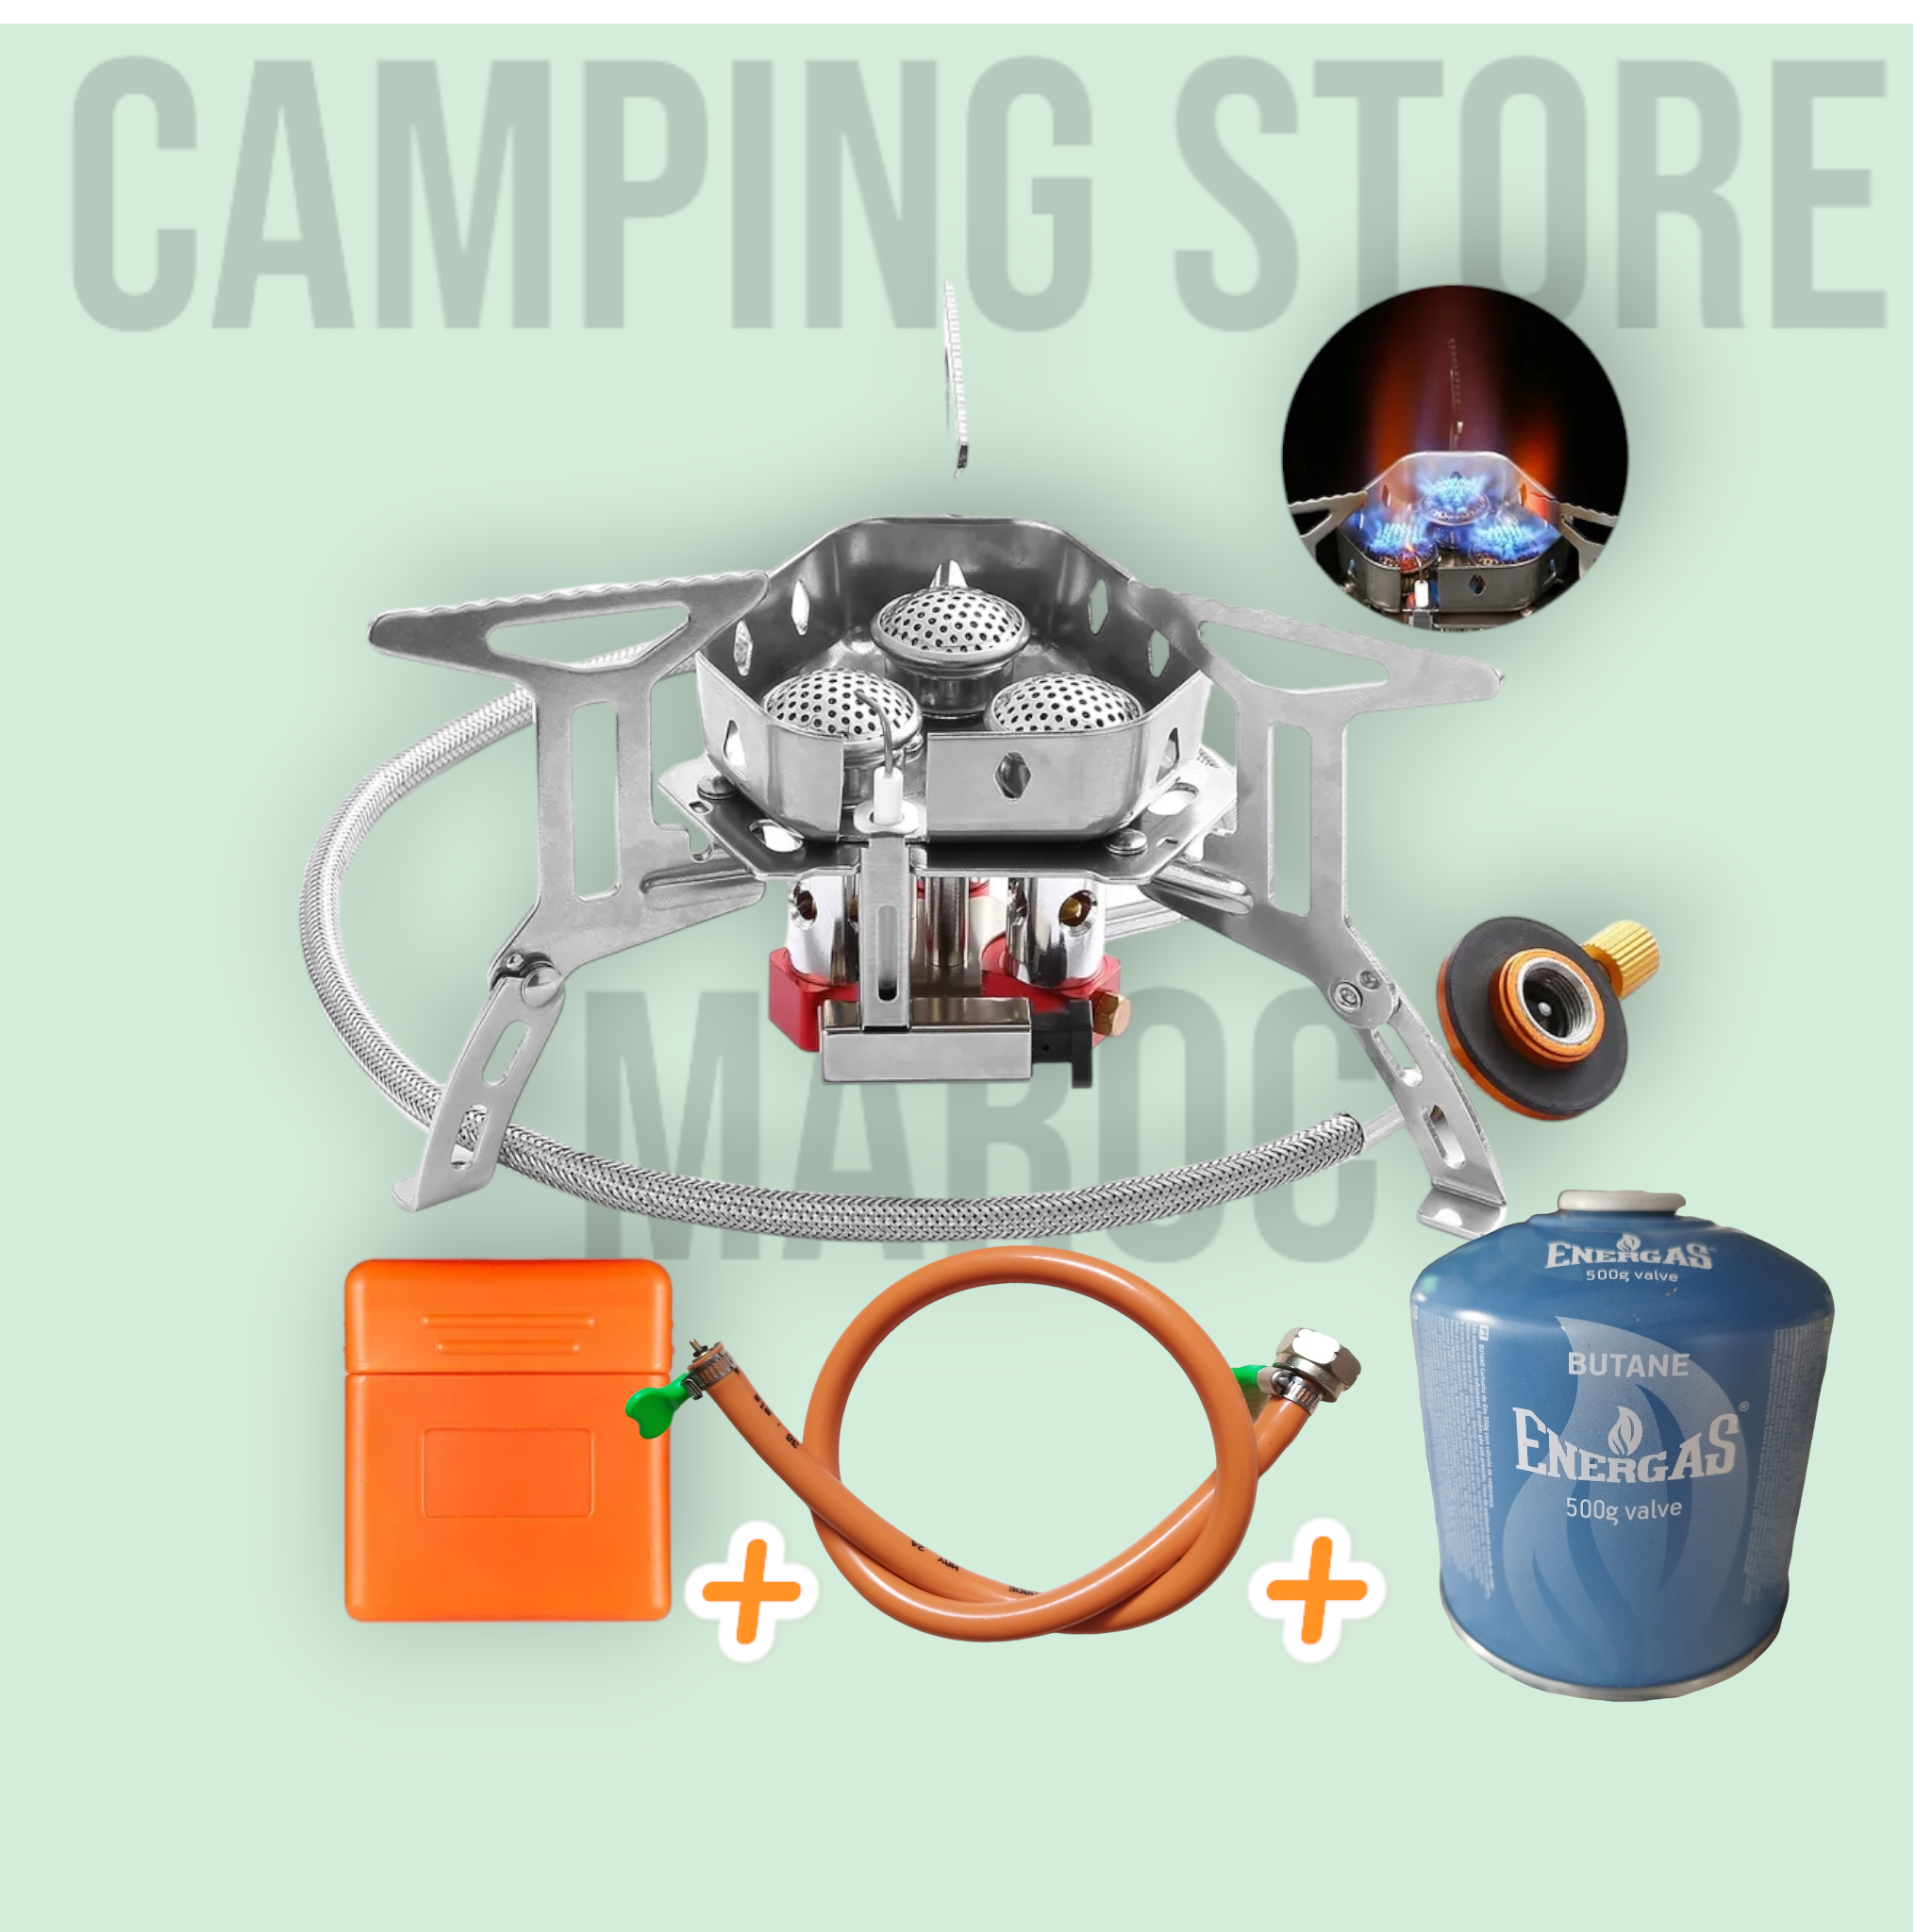 Camping Gaz trois Réchaud de bonne Qualité Complet (Rass+Cartouche filtage 500g rechargeable+Chargeur)